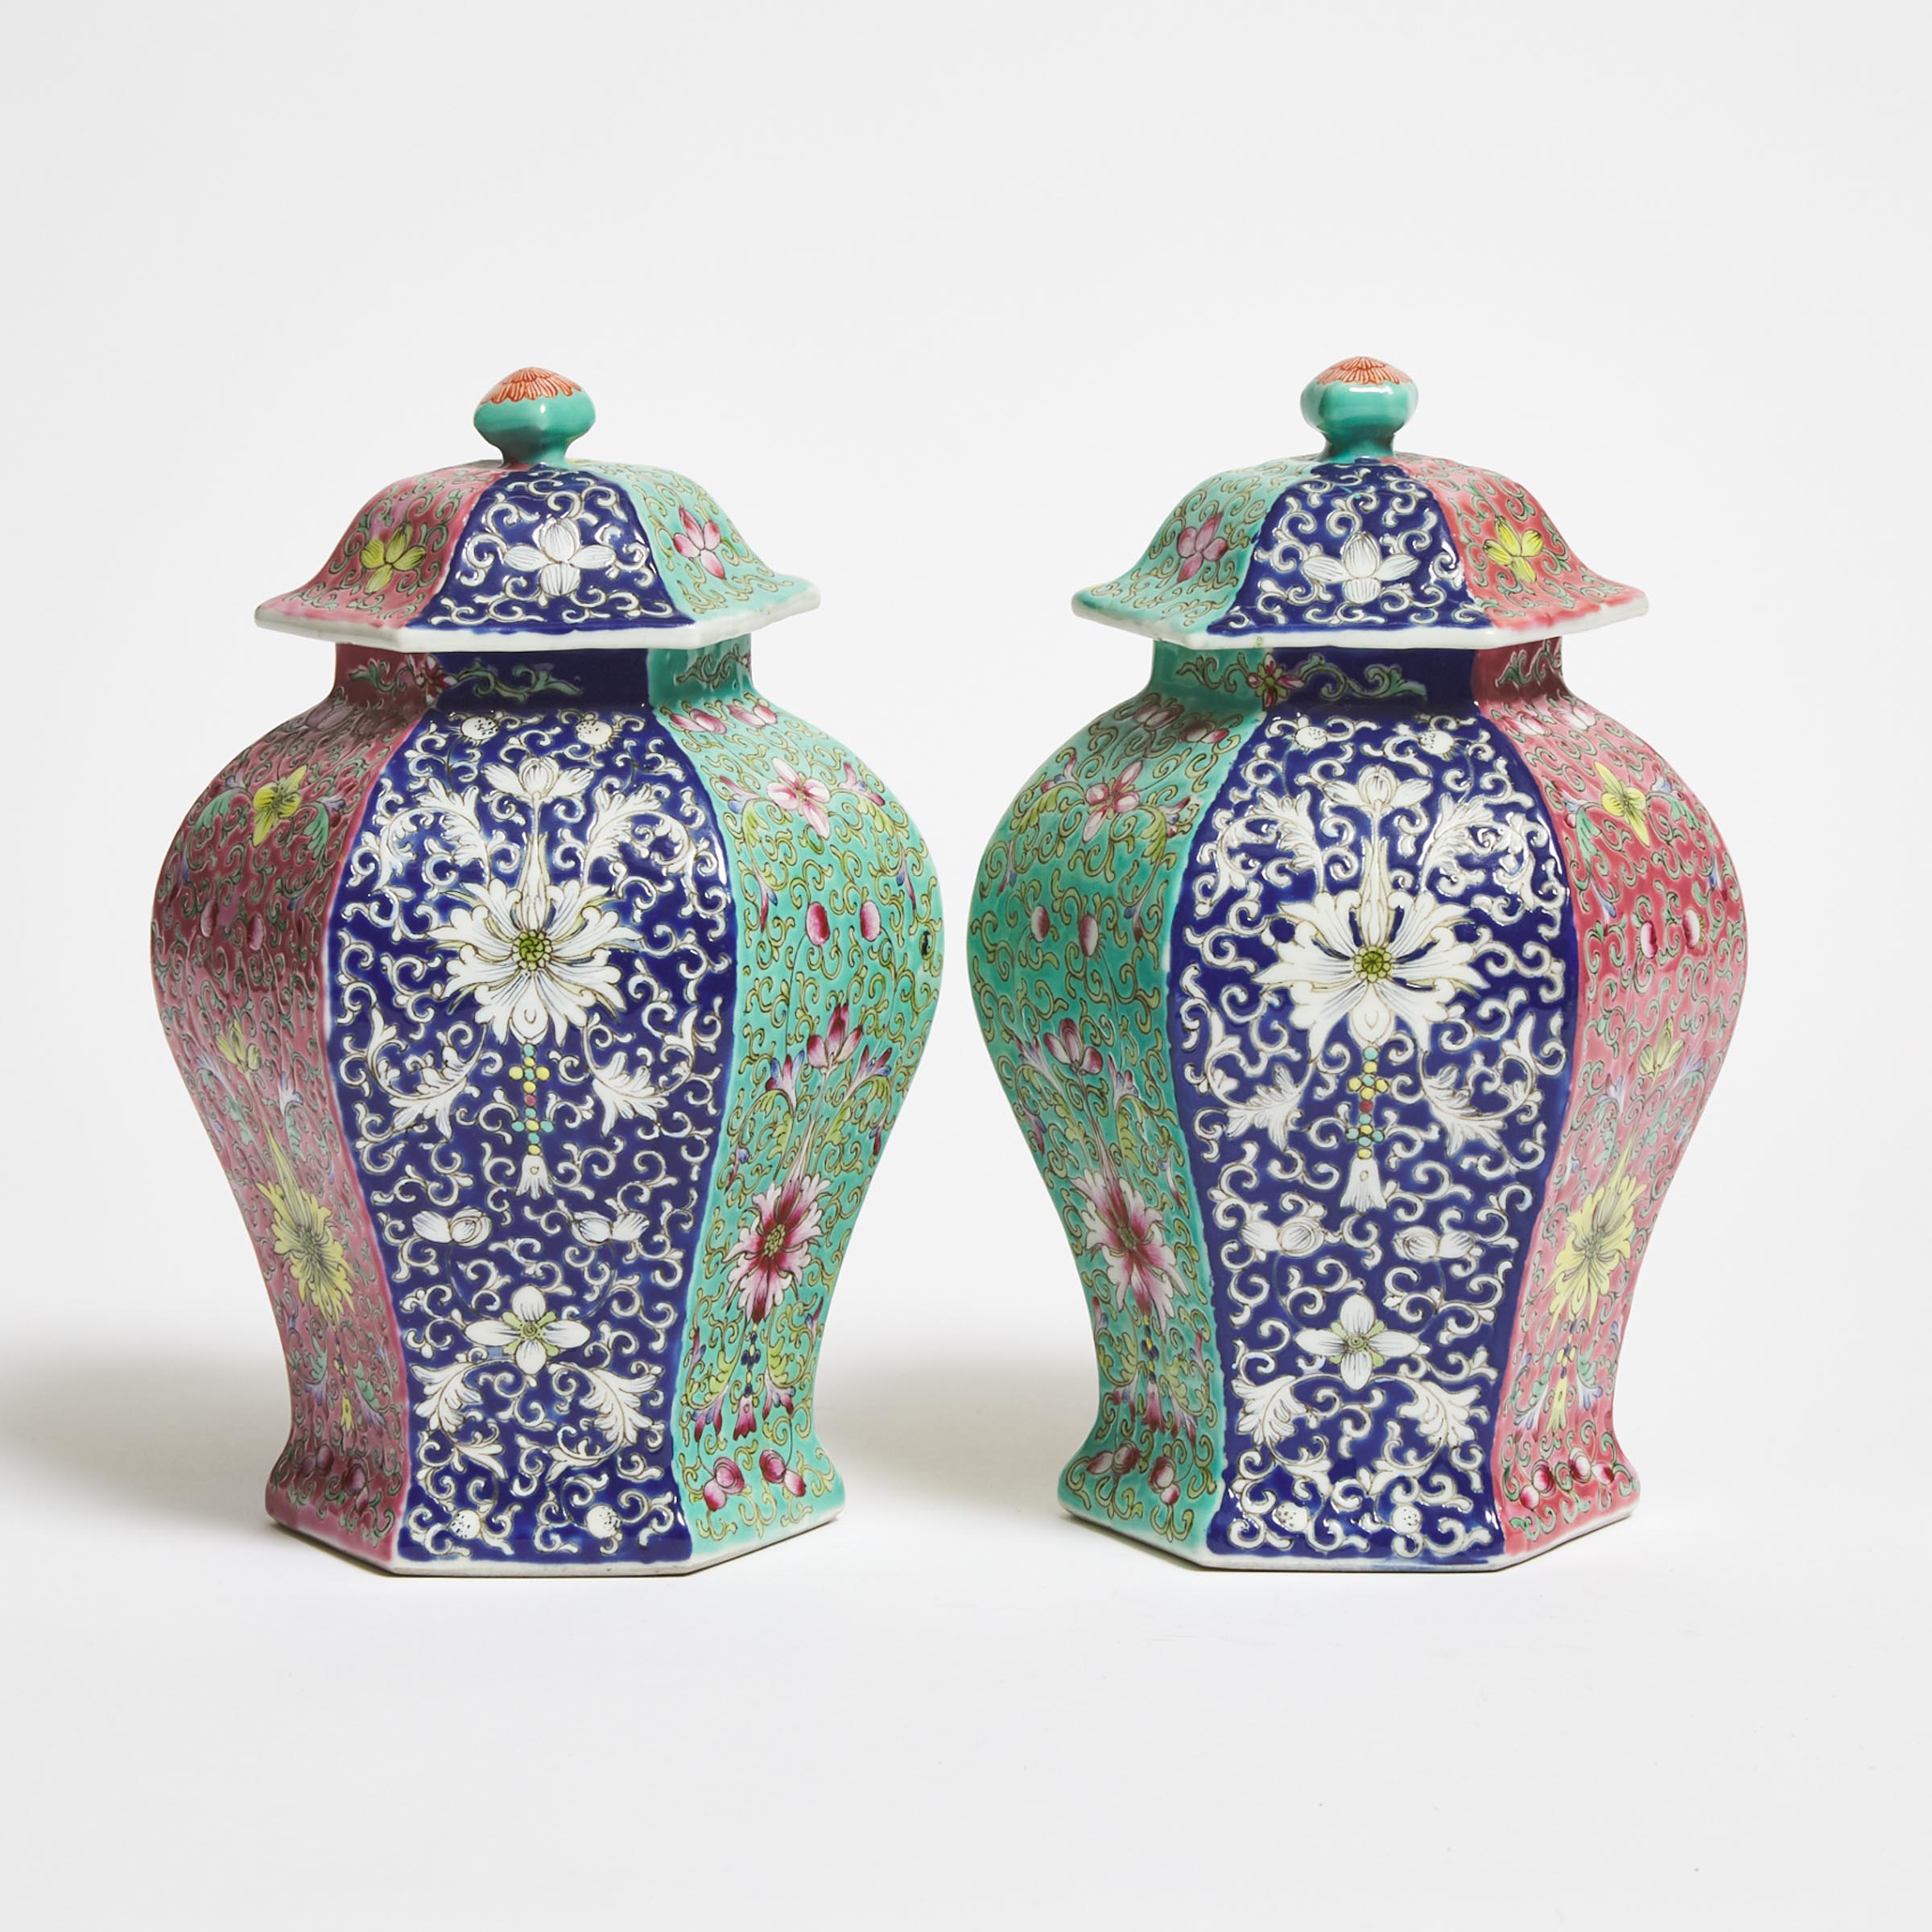 A Pair of Enameled Hexagonal Vases